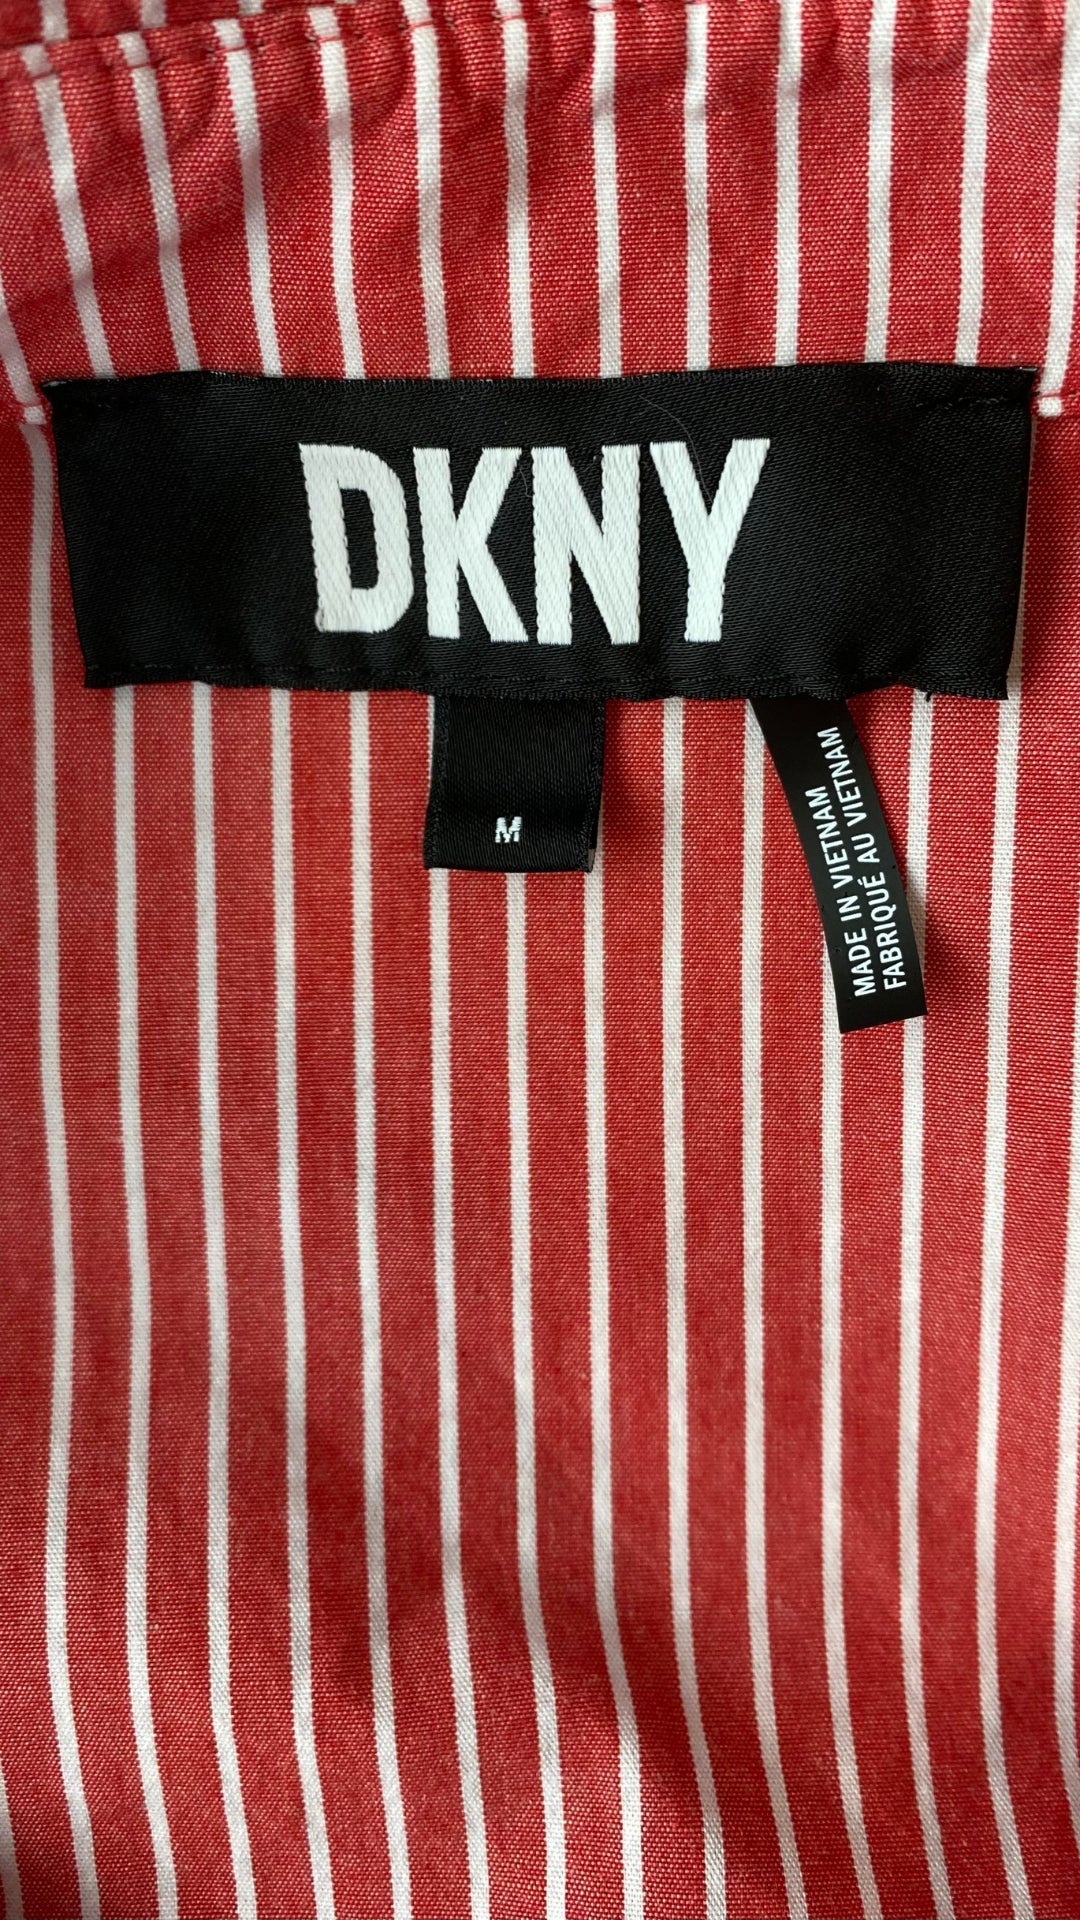 Chemisier rouge rose à rayures DKNY, taille medium. Vue de l'étiquette de marque.